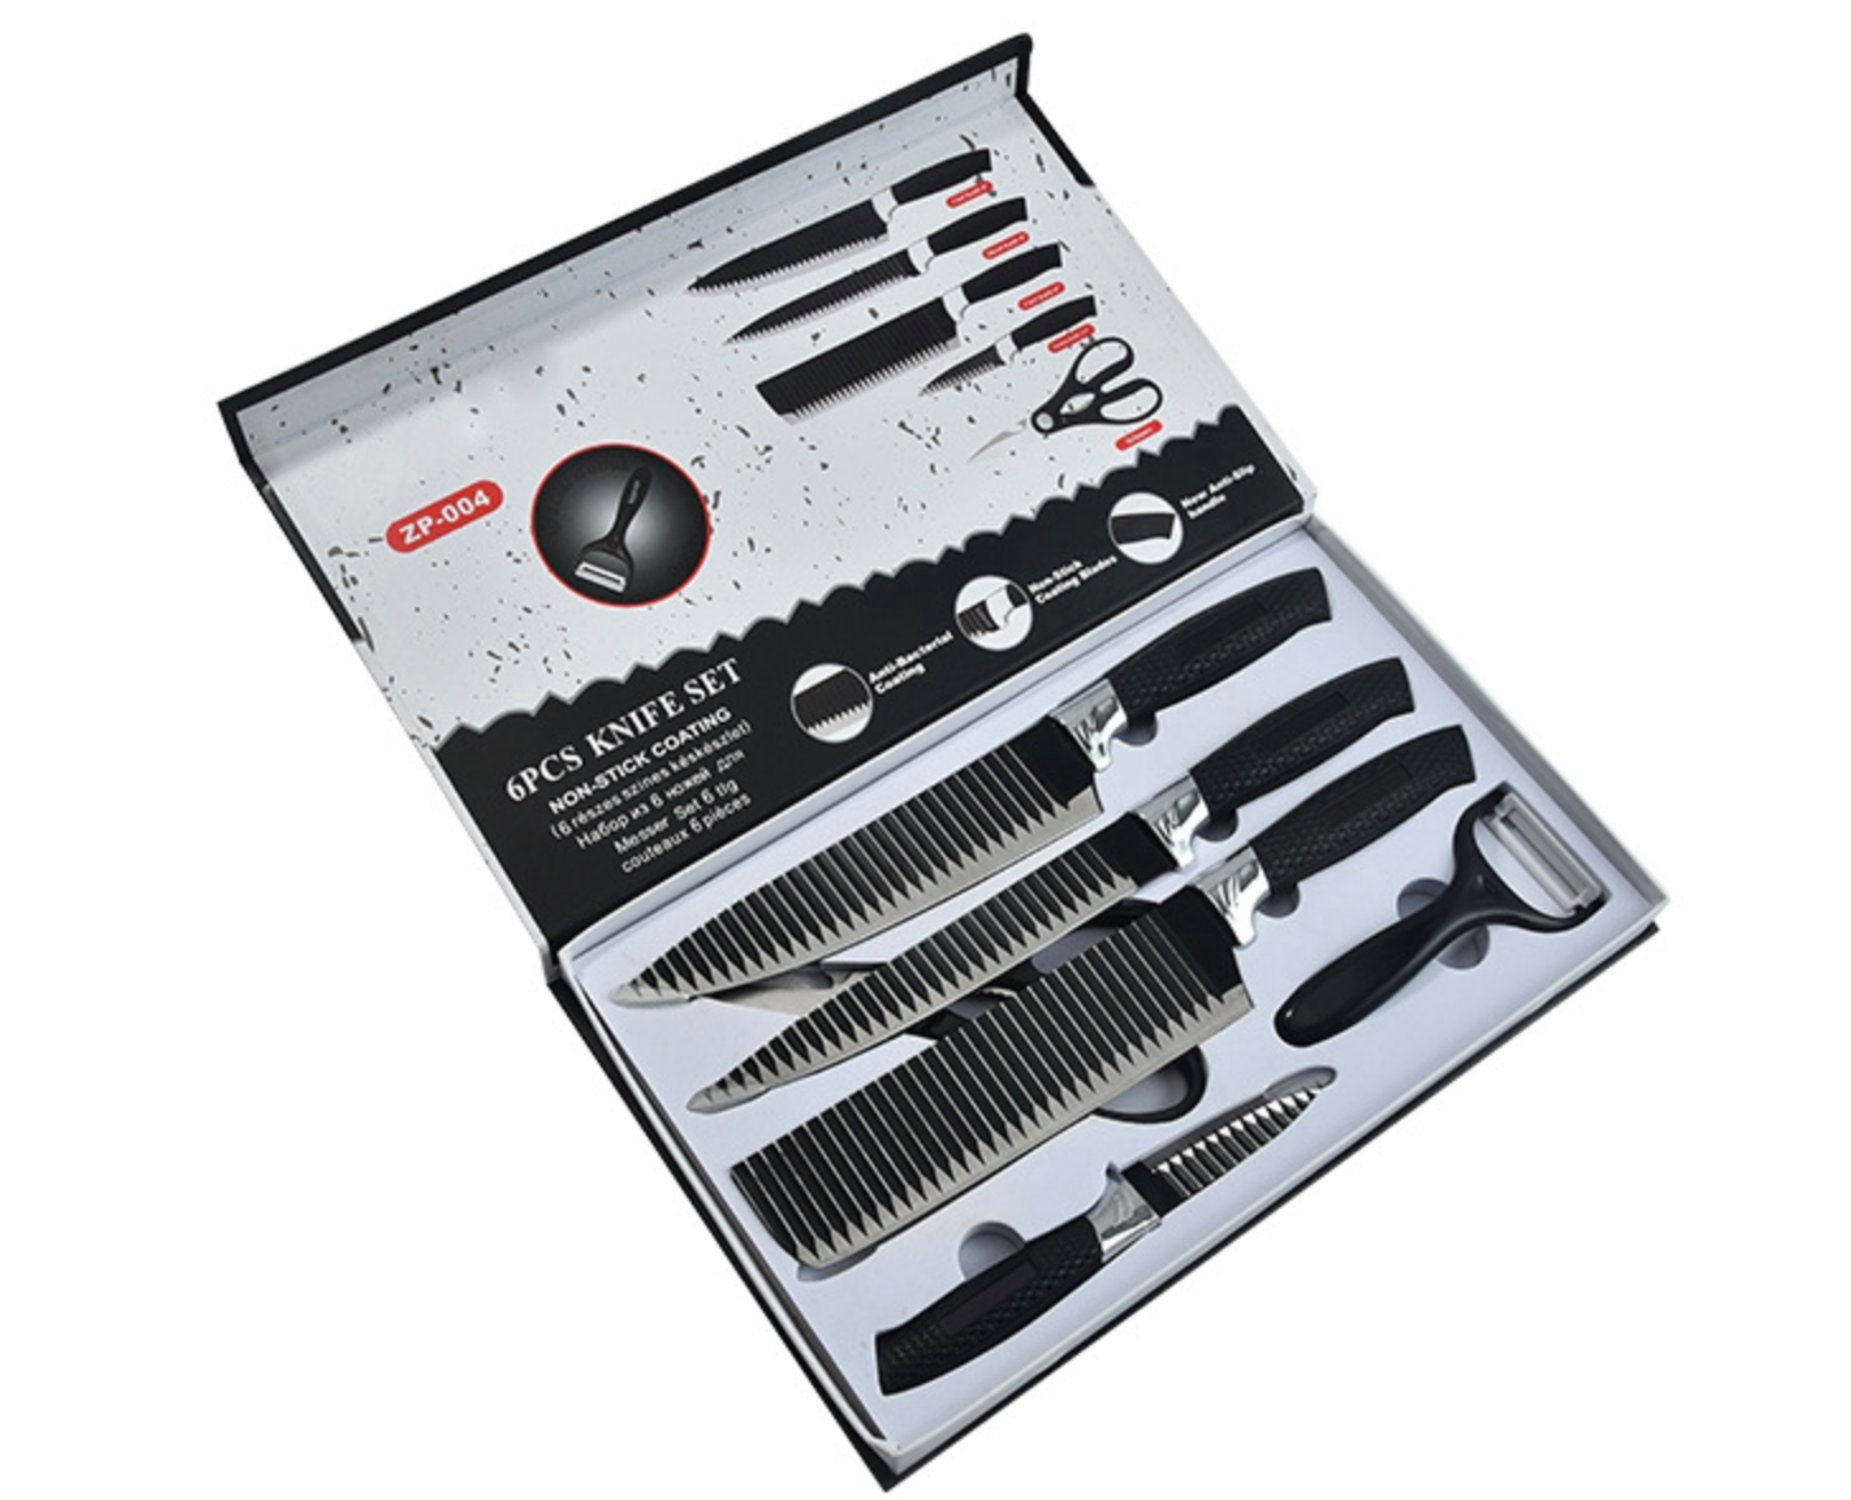 H-basics Messer-Set 6er Küchenmesser Set - in Schwarz - 6-teiliges Messer Set aus rostfreiem Edelstahl bestehend aus Schäler, Hackbeil, Filetiermesser, Tranchiermesser und Allzweckmesser | Messersets